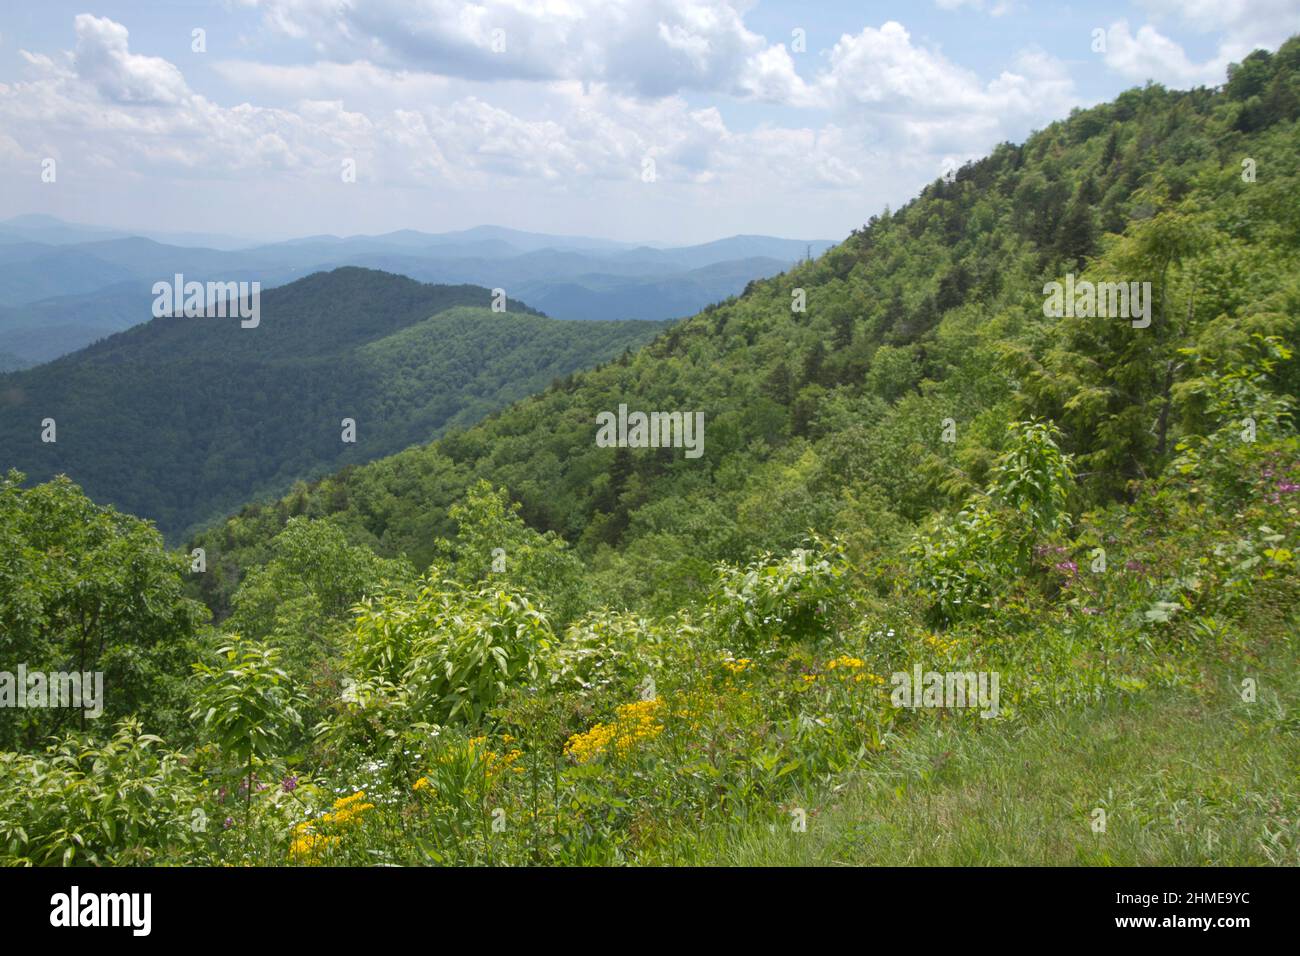 vista panorámica desde la North Carolina Blue Ridge Parkway con vistas a las exuberantes montañas Appalachian con flores silvestres en primer plano Foto de stock